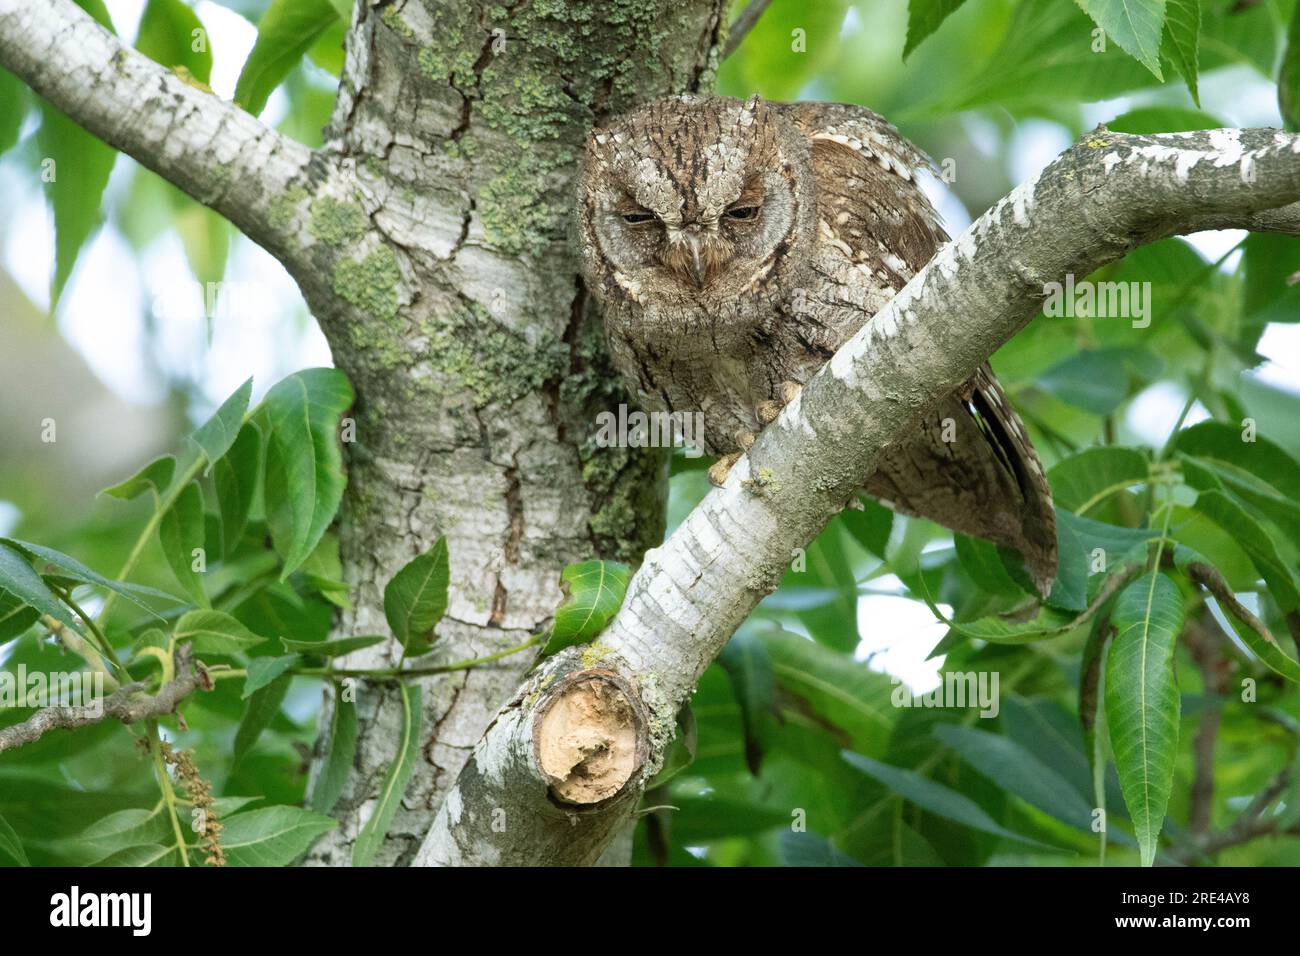 Erwachsene Eule sitzt Tagsüber getarnt auf einem AST im Baum Foto Stock